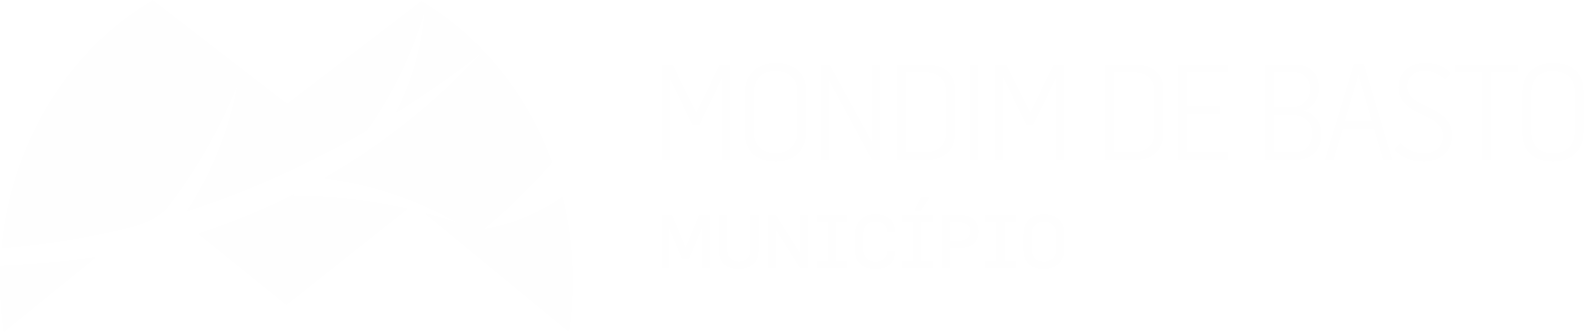 Municipio de Mondim de Basto